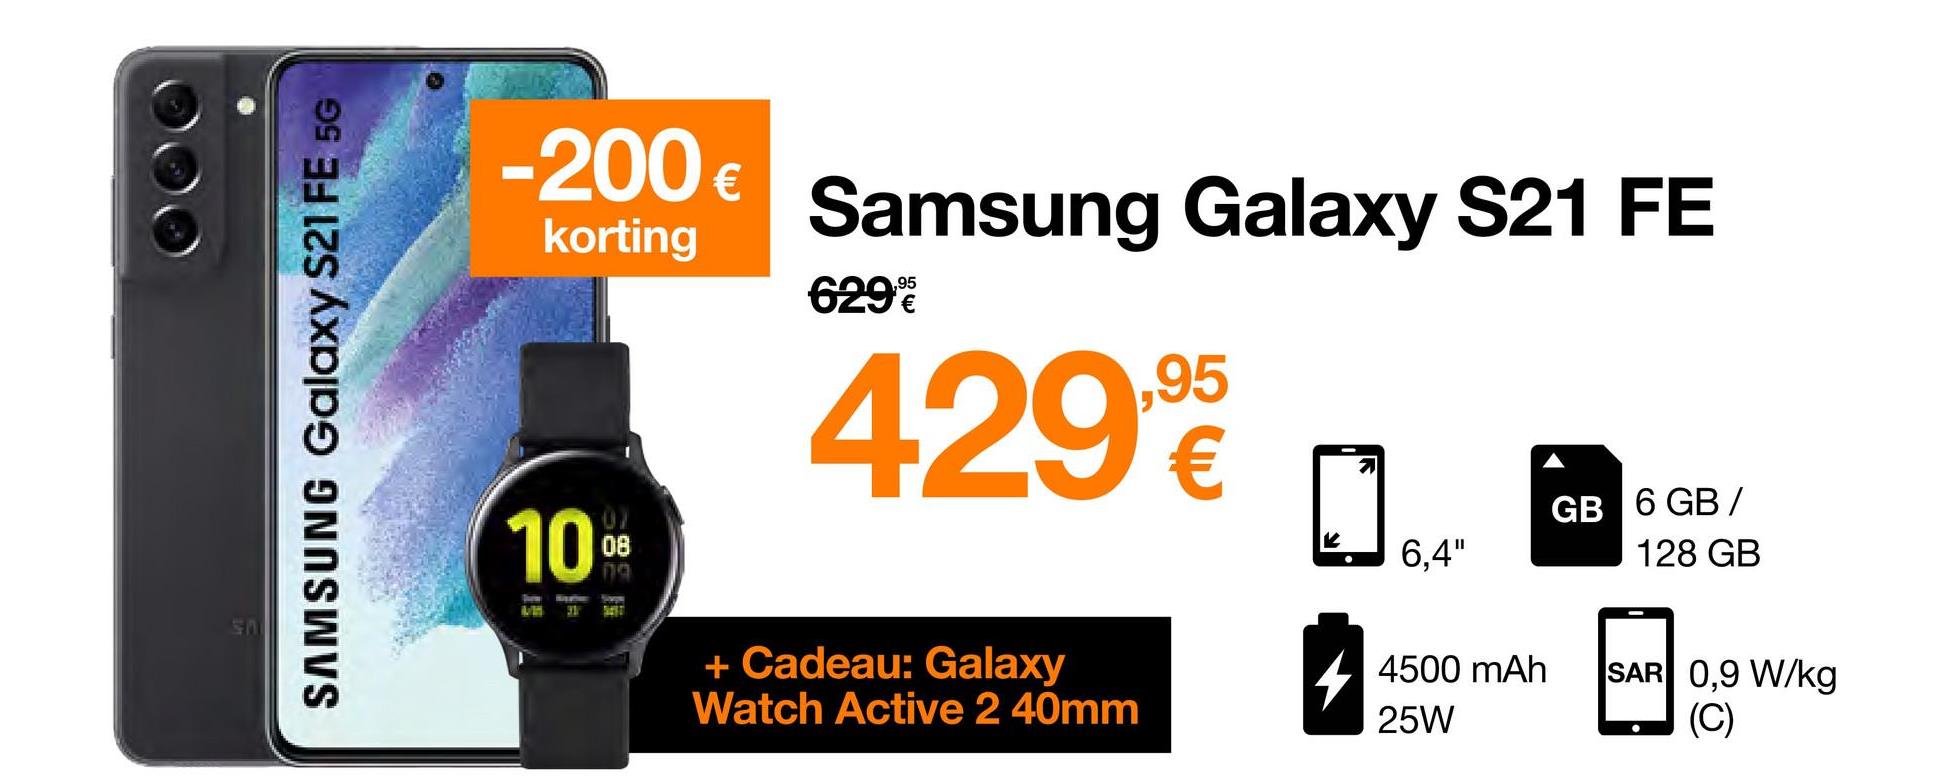 SAMSUNG Galaxy S21 FE 5G
-200 €
korting
10%
B
31
Samsung Galaxy S21 FE
429,9
629%
+ Cadeau: Galaxy
Watch Active 2 40mm
6,4"
4500 mAh
25W
GB 6 GB/
128 GB
SAR 0,9 W/kg
(C)